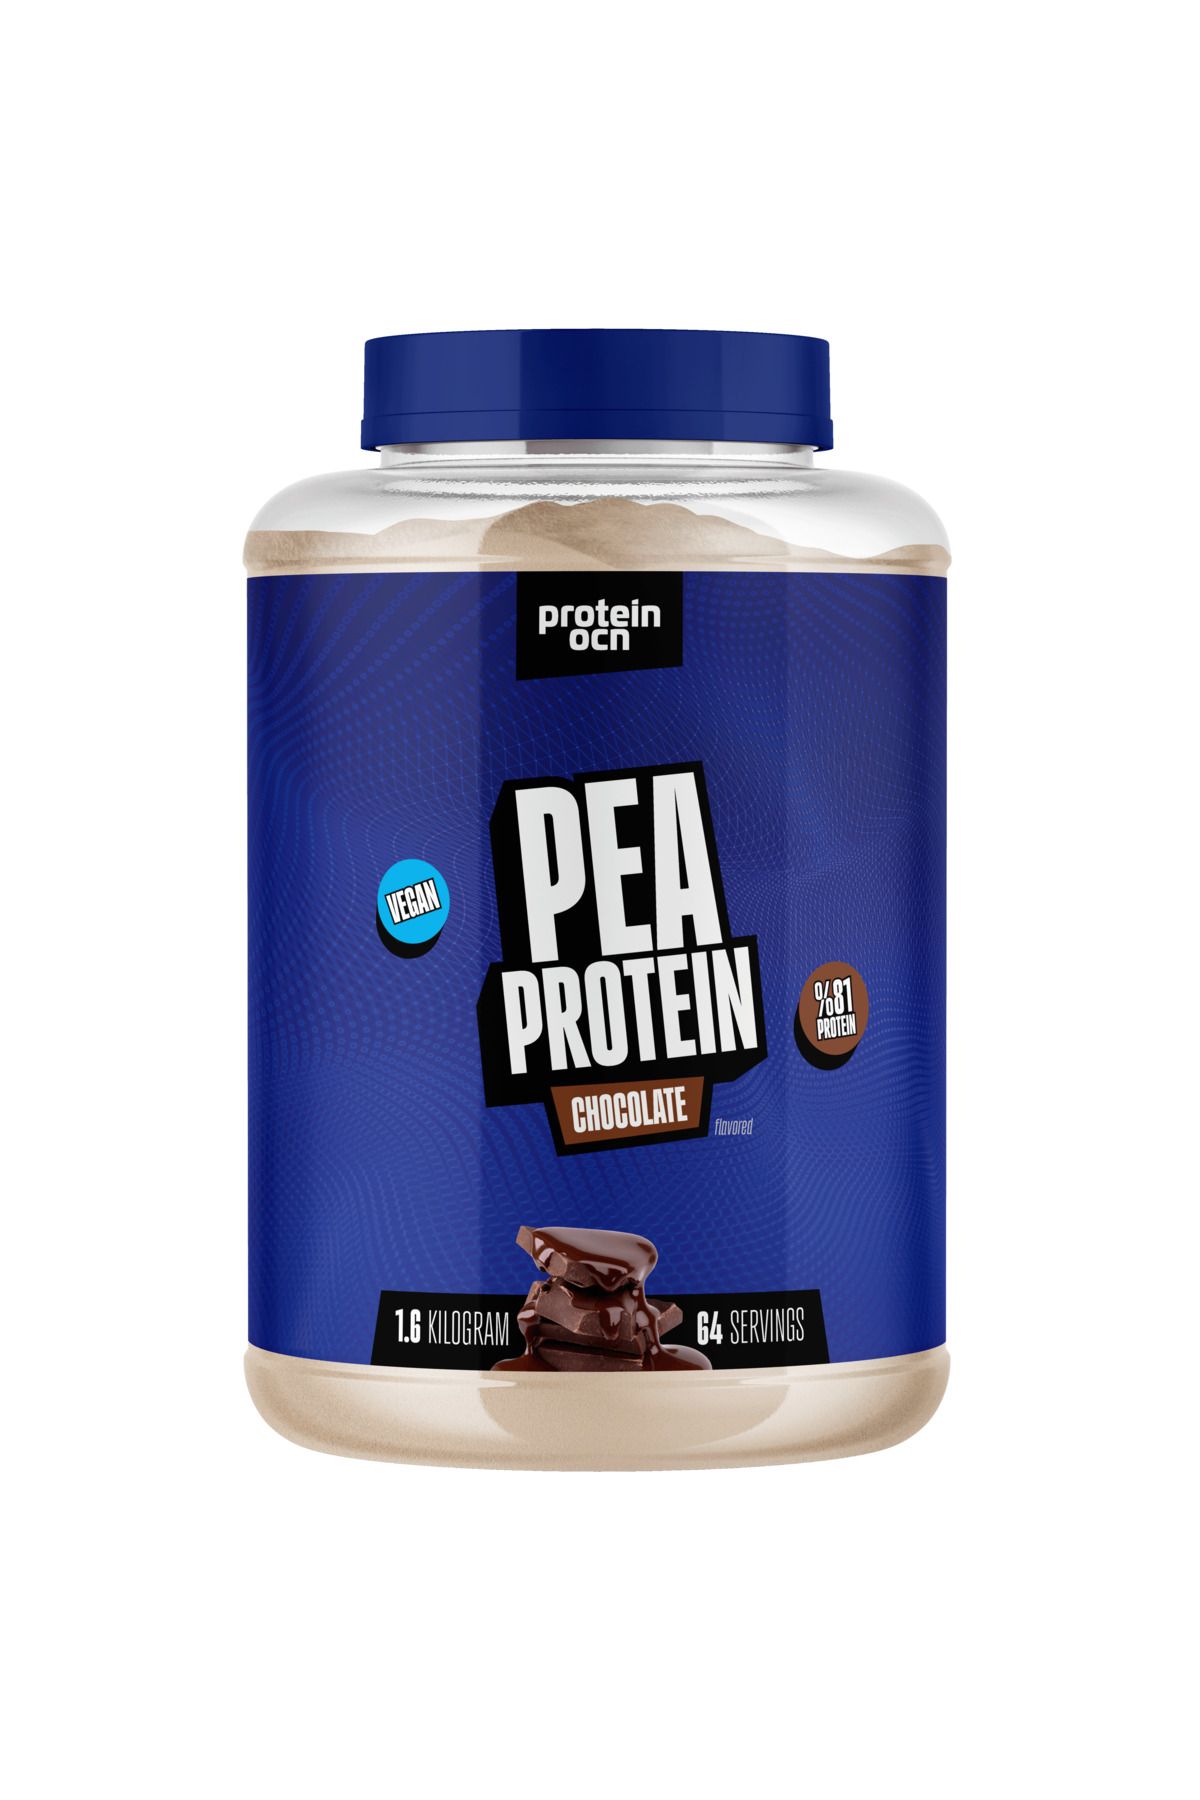 Proteinocean Pea Proteın Çikolata 1.6 kg 64 Servis